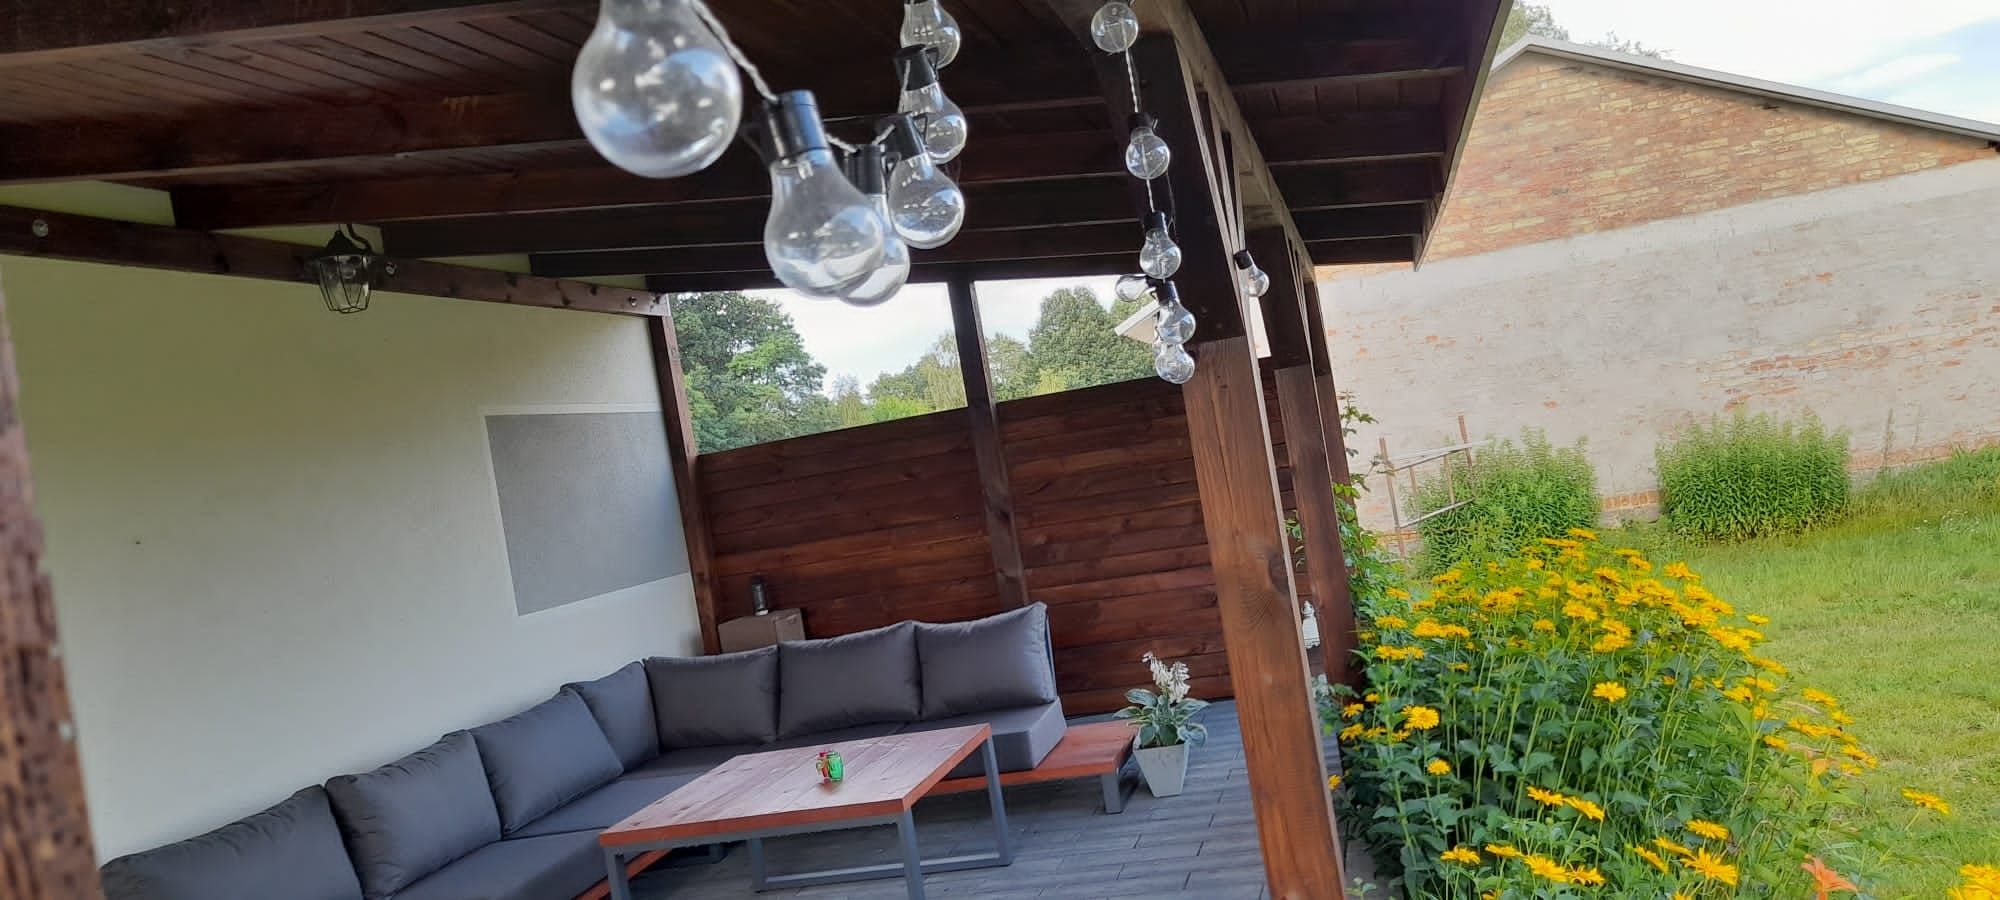 Zestaw wypoczynkowy meble ogrodowe narożnik ogrodowy loft